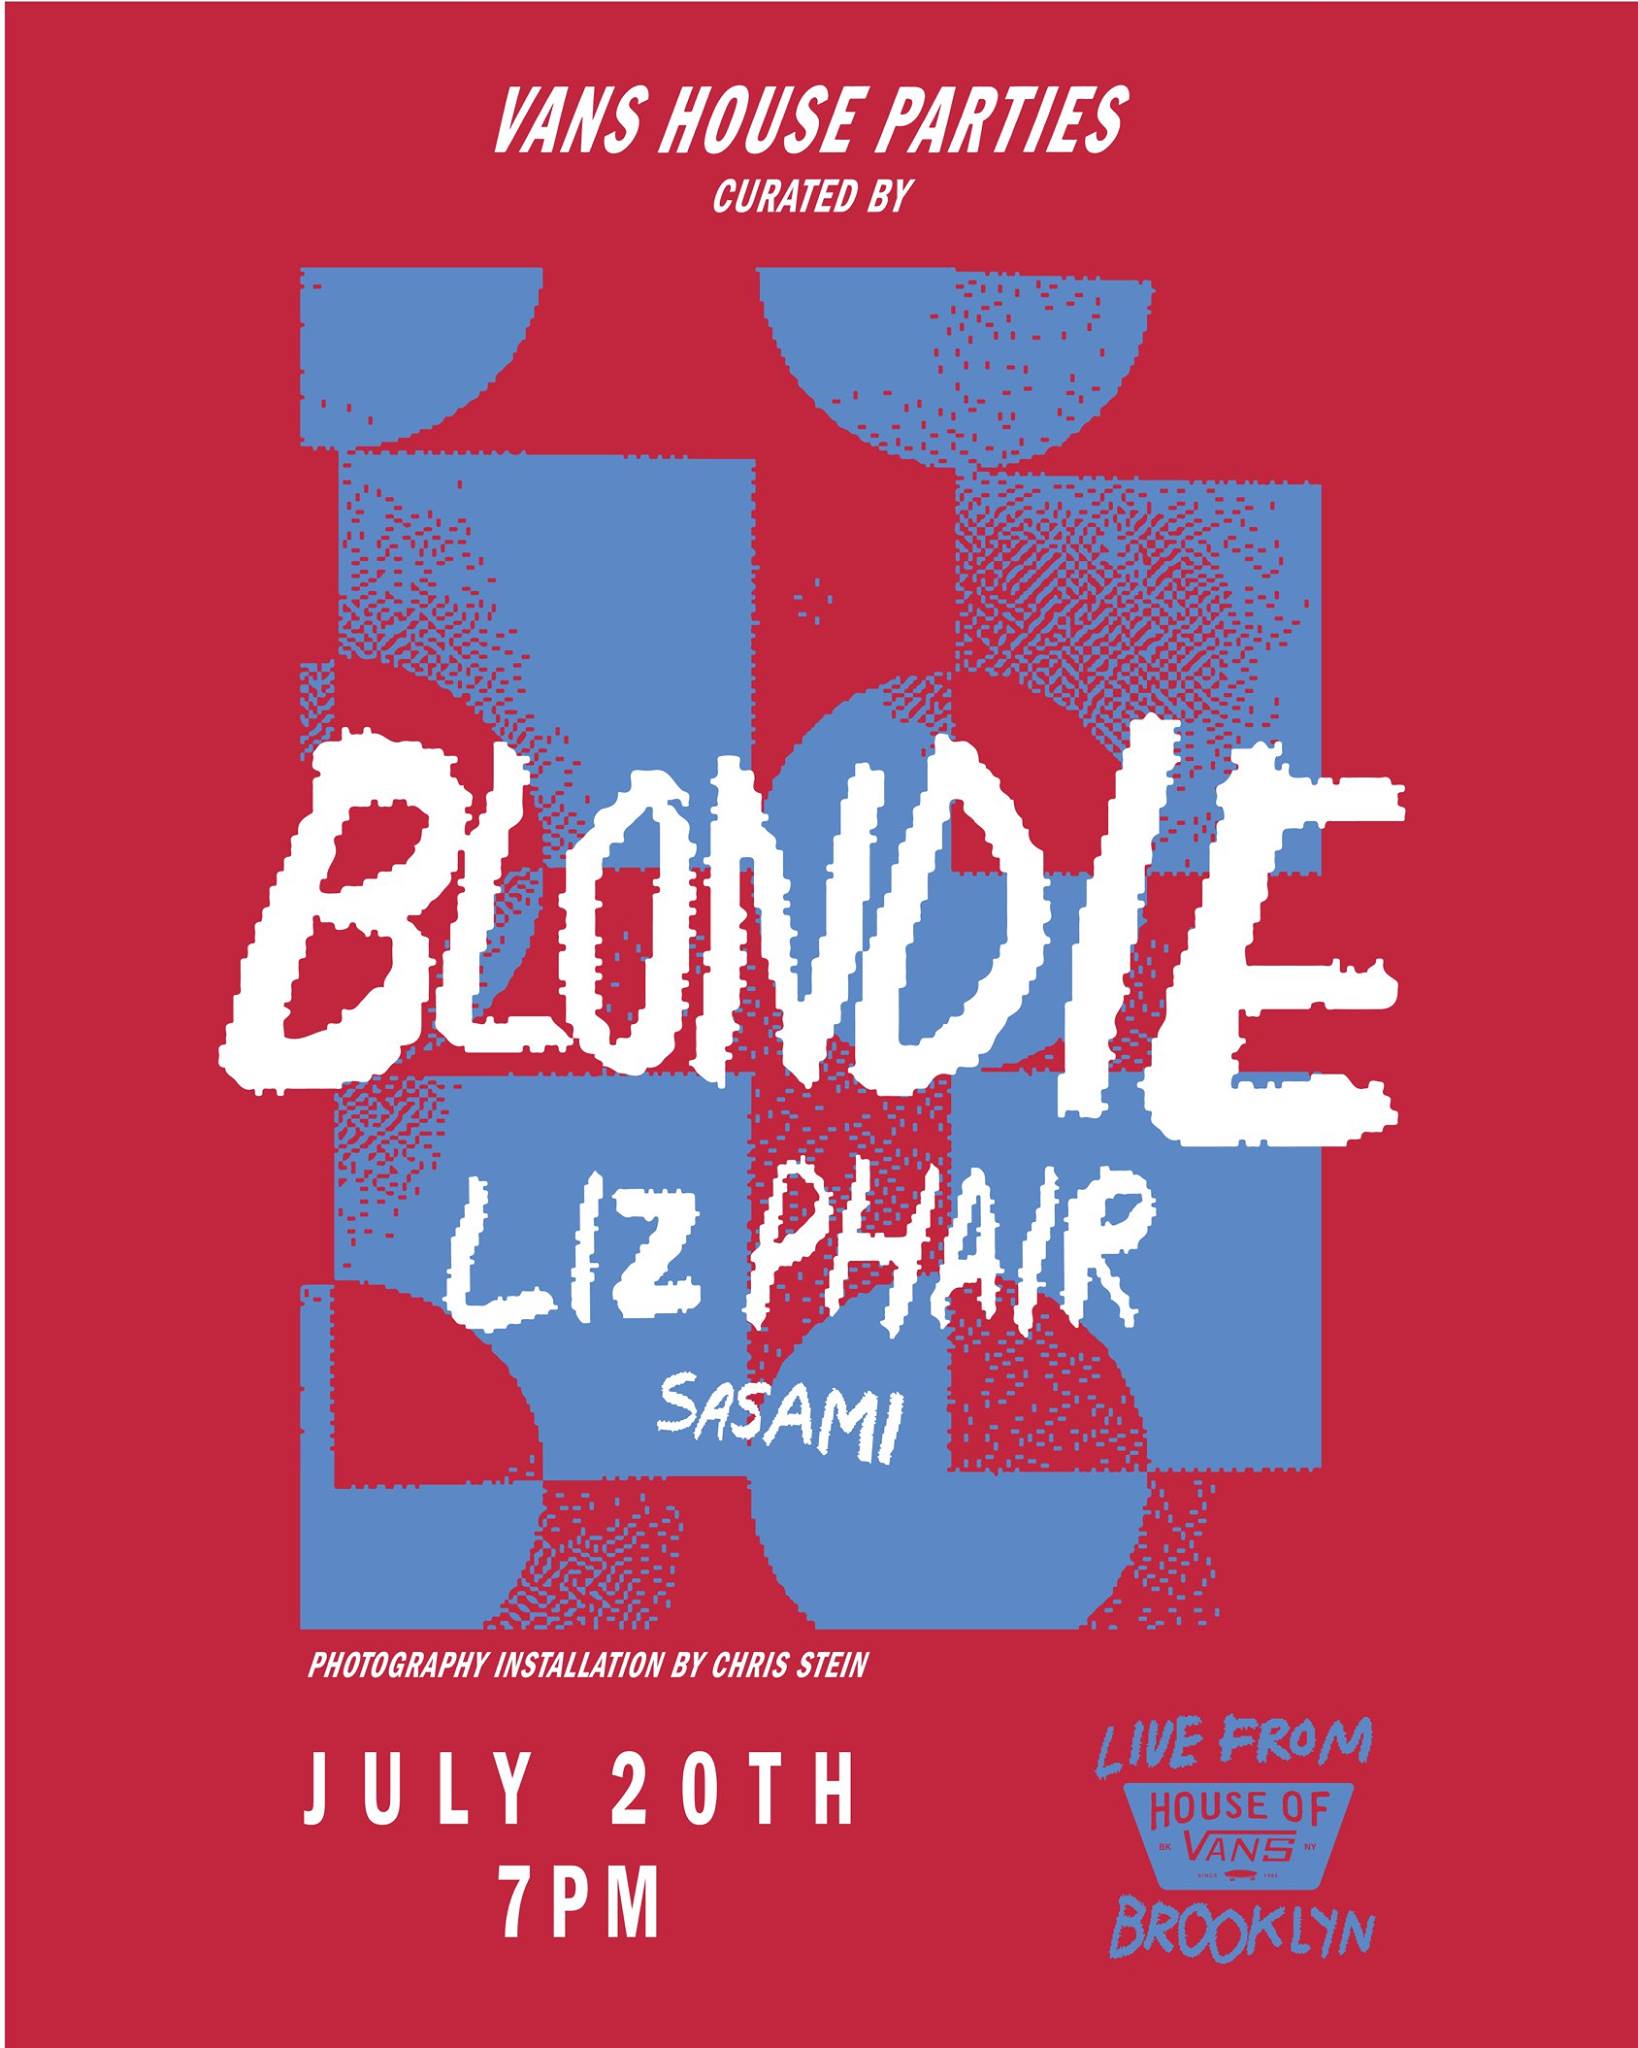 Vans House Parties: Blondie / Liz Phair at House of Vans Brooklyn on 07-20-18